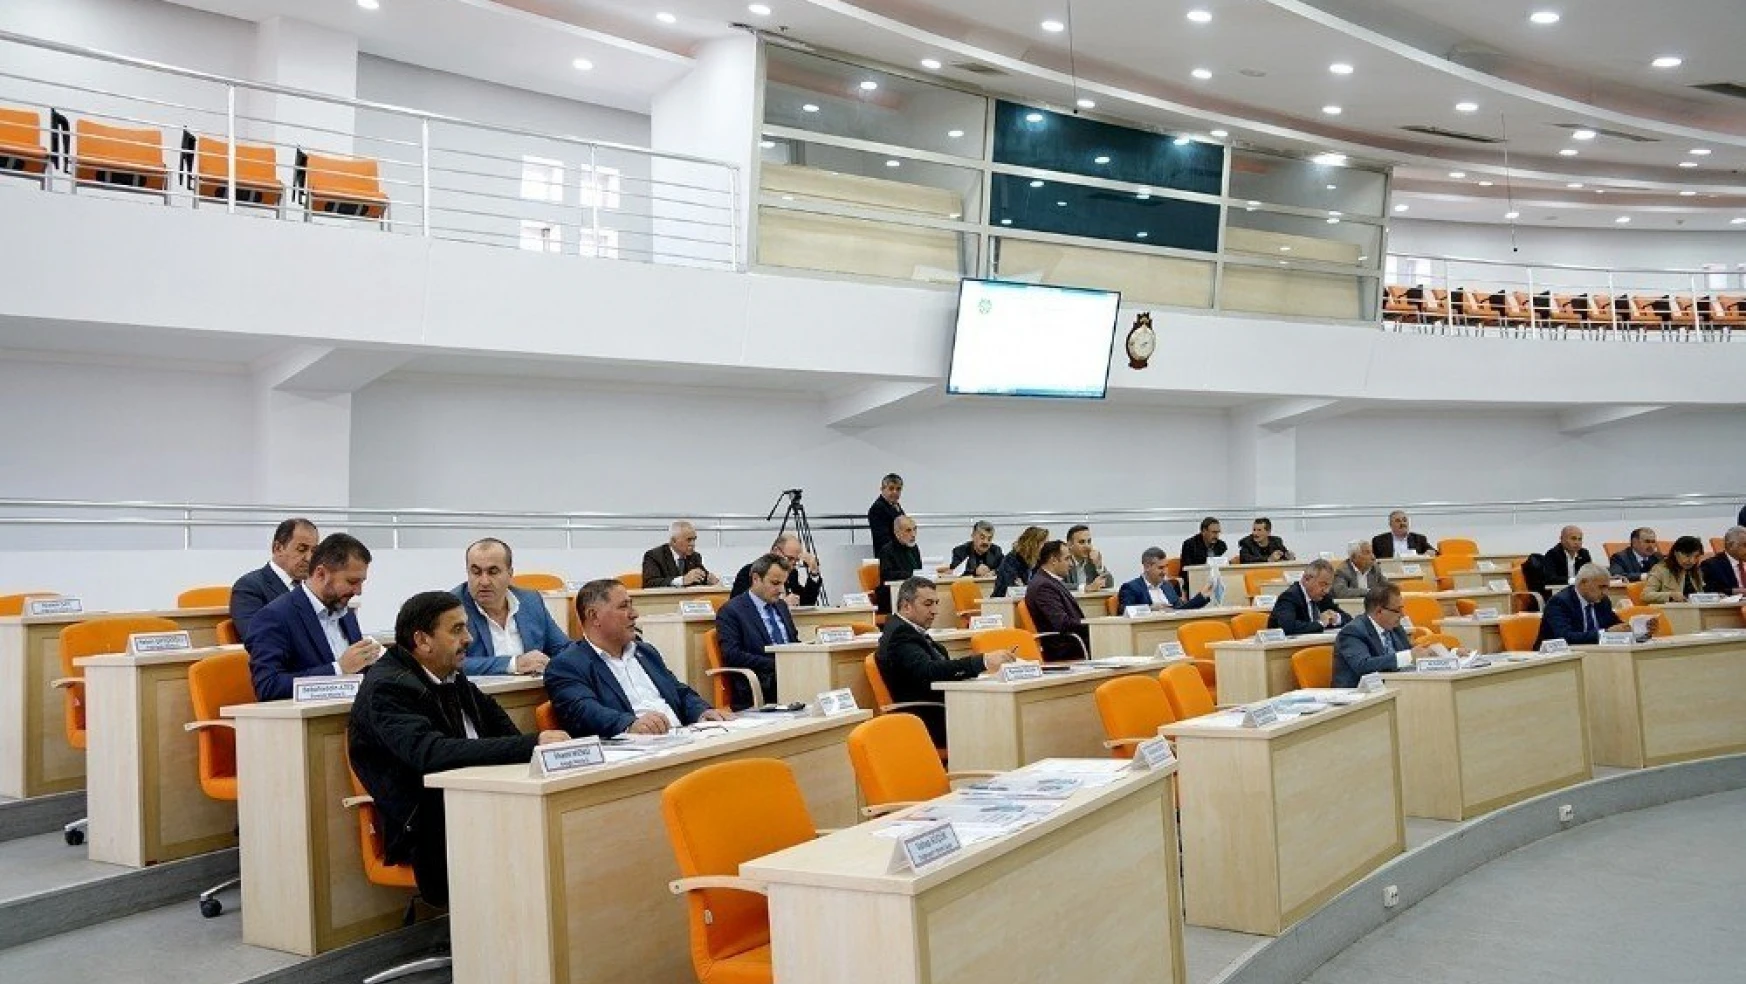 Büyükşehir Belediyesi Kasım ayı meclis toplantısı devam ediyor
